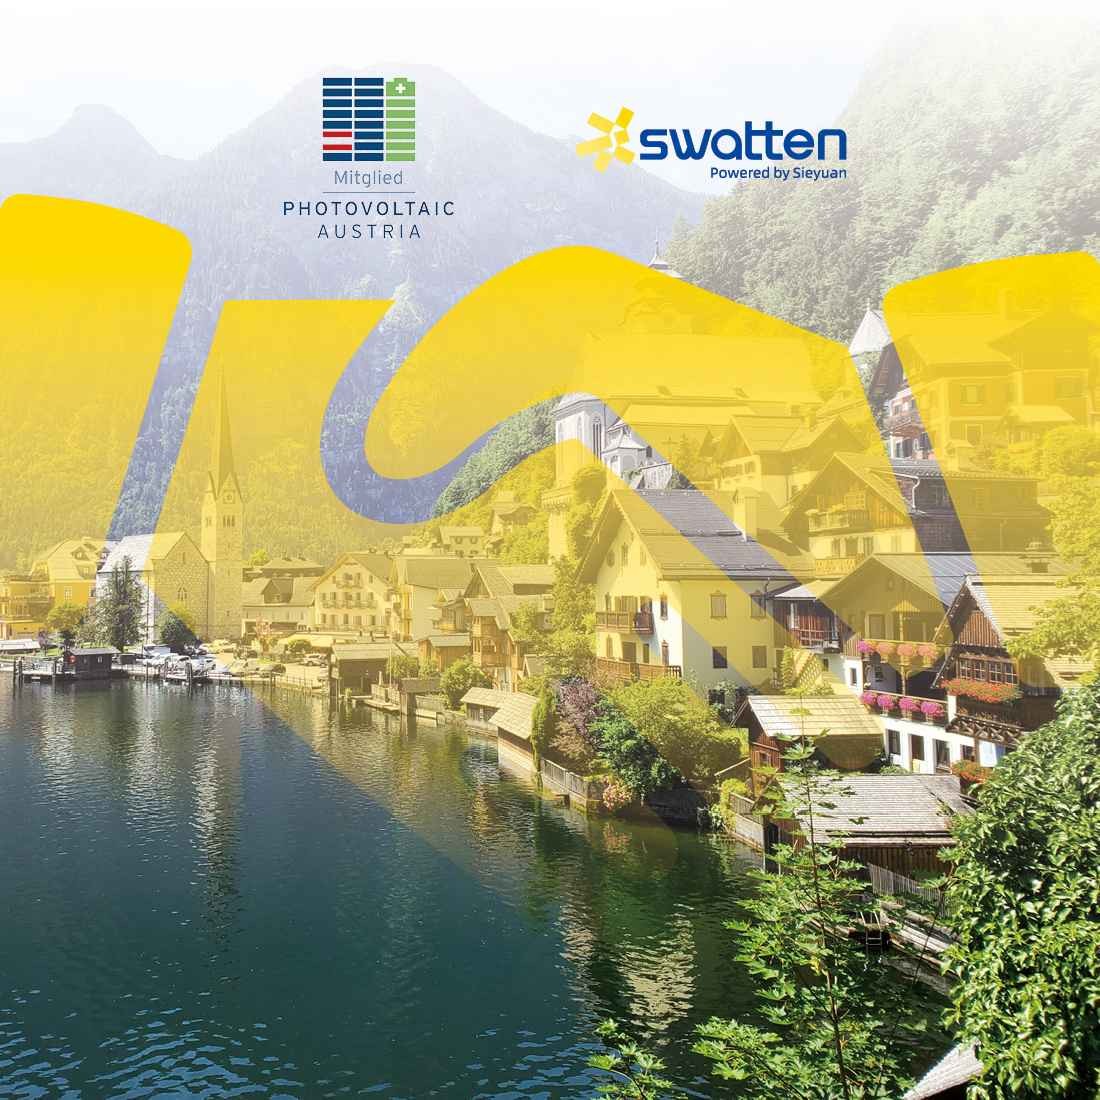 Swatten & Bundesverband Photovoltaic Austria: Lighting Up Austria's Future!